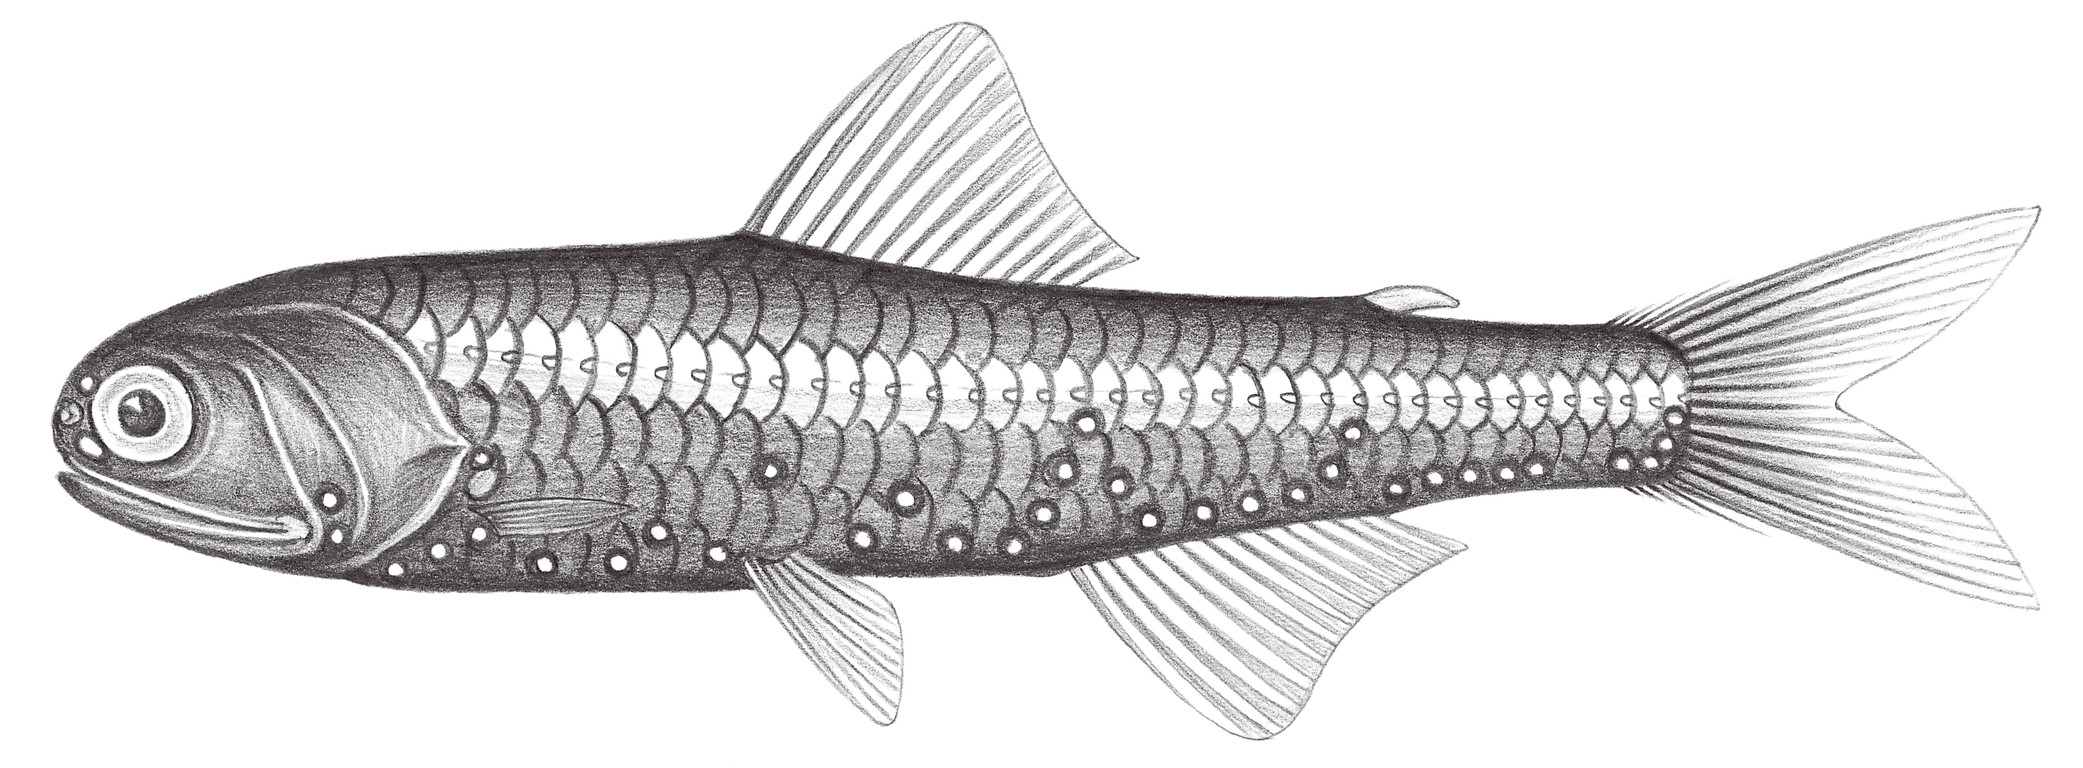 515.	渡瀨氏眶燈魚 Diaphus watasei Jordan & Starks, 1904